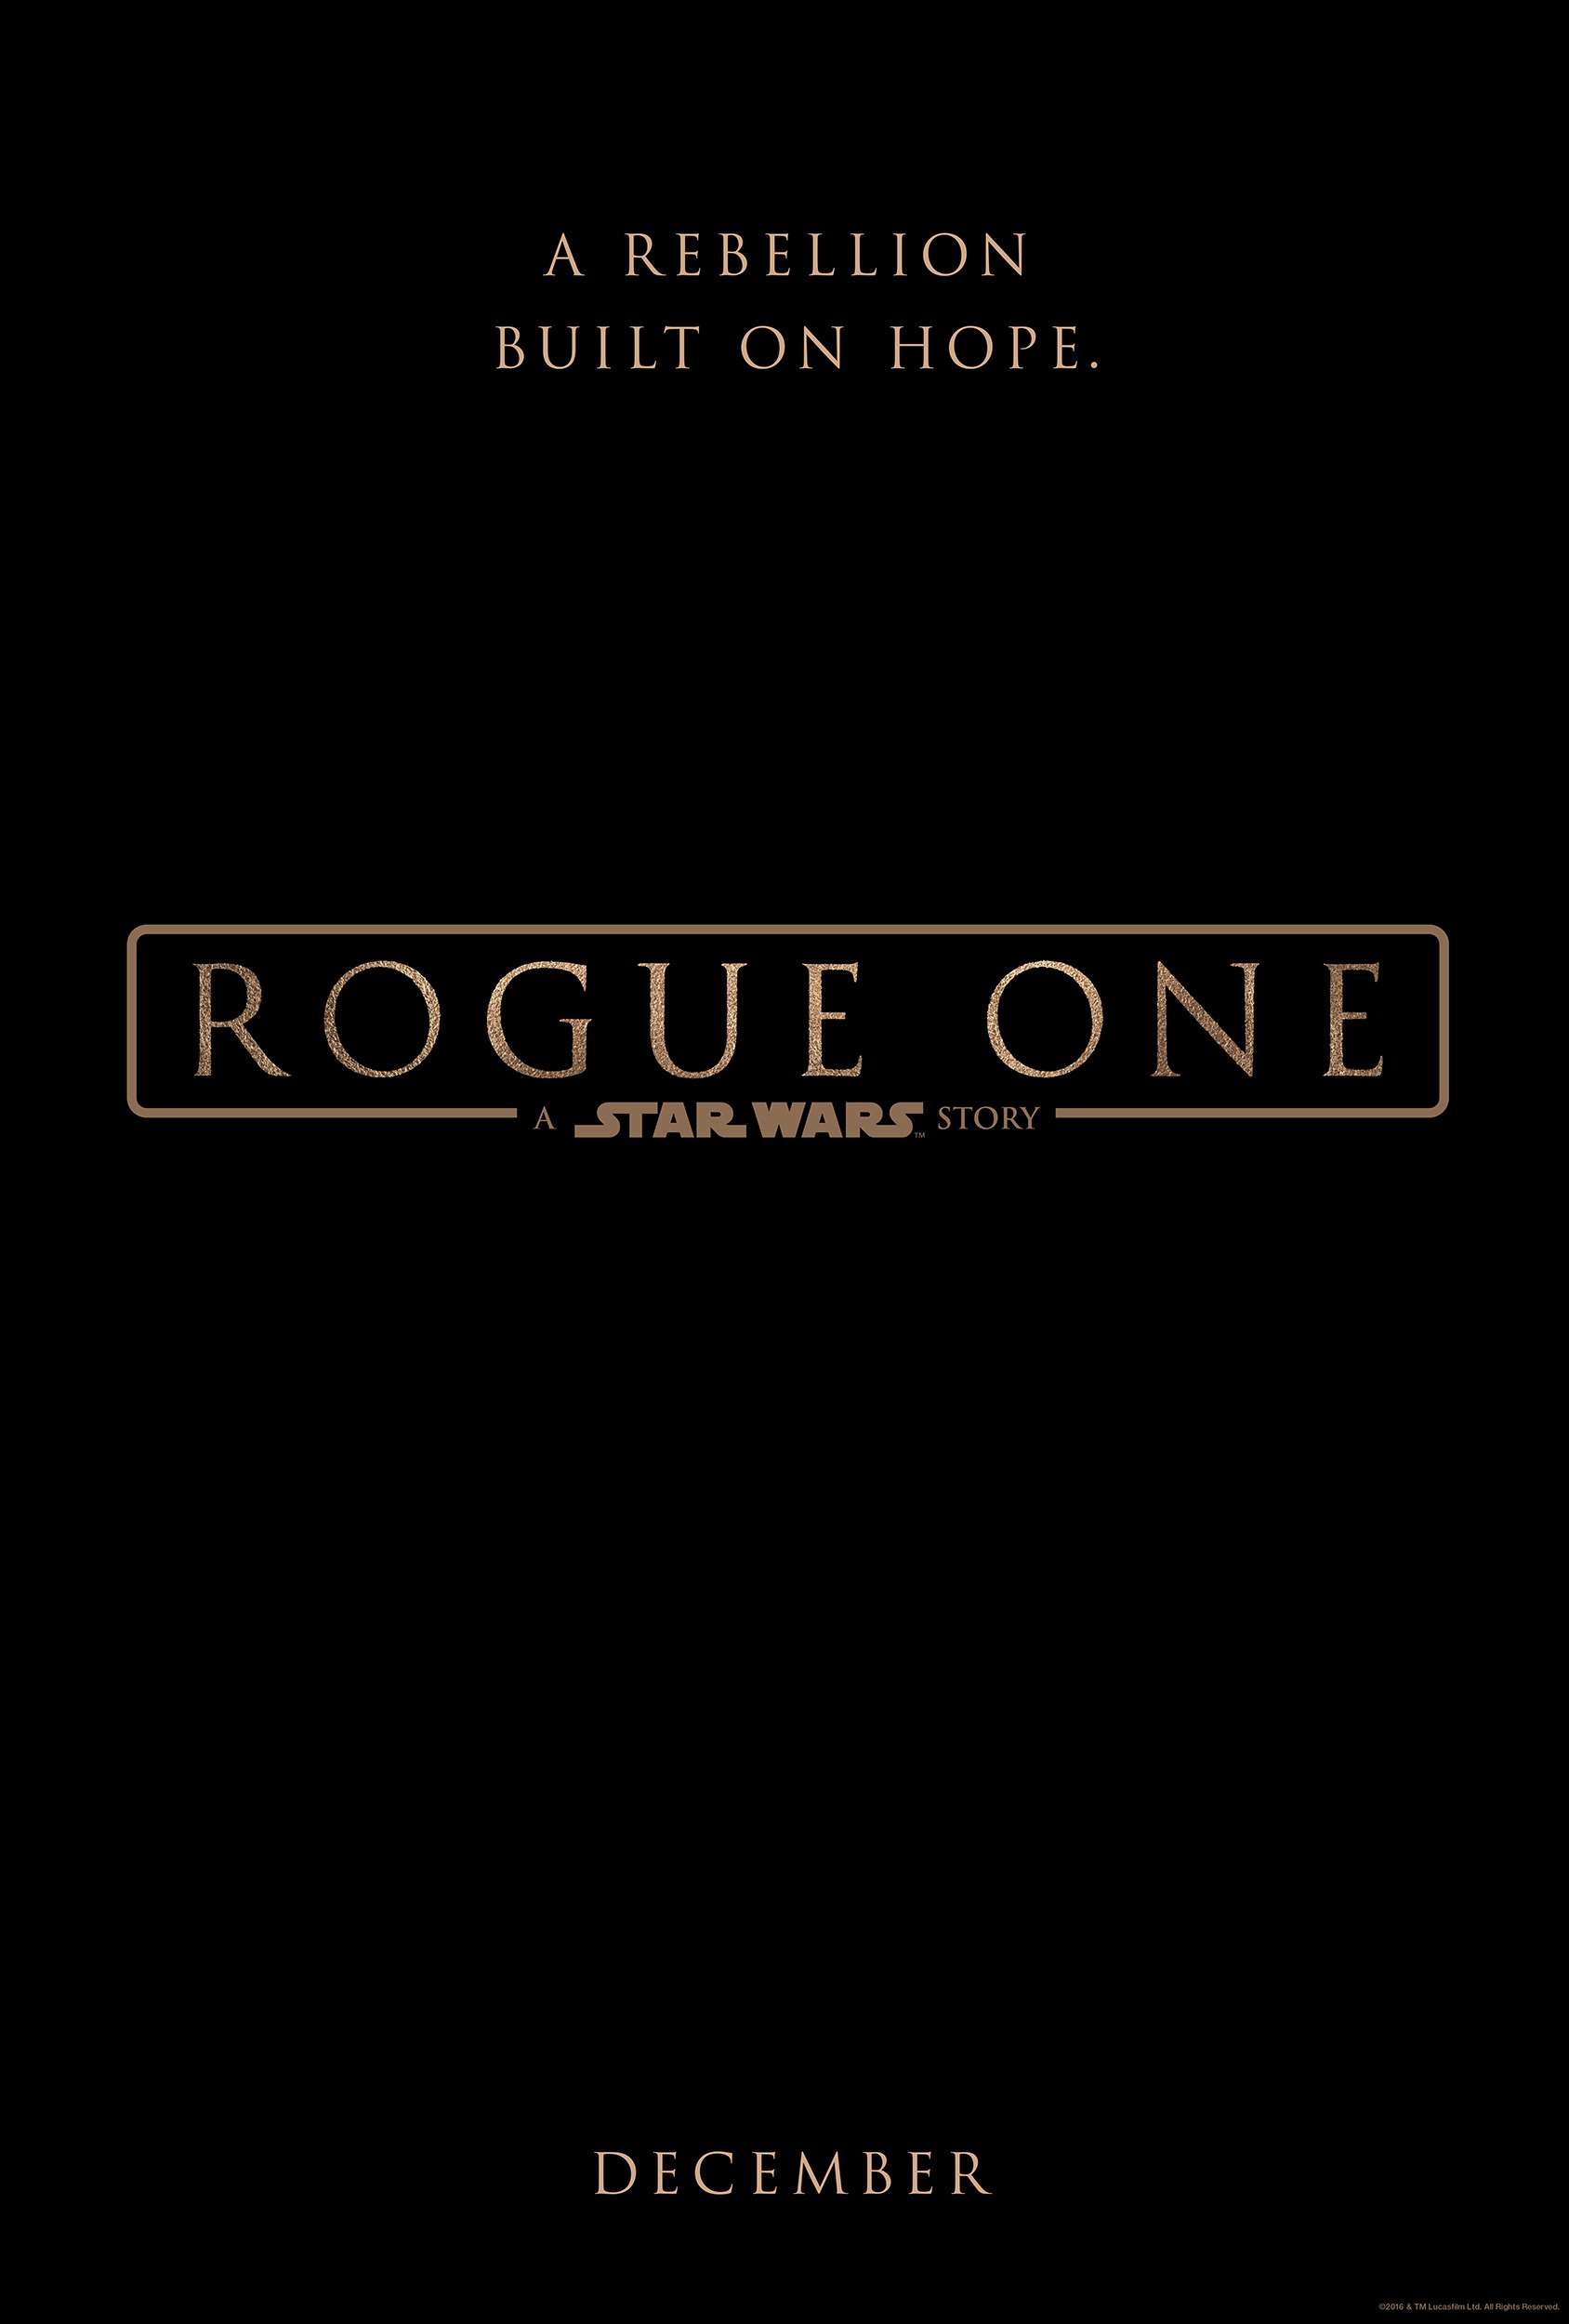 Star Wars: Rogue One Bluray Online 2016 Movie